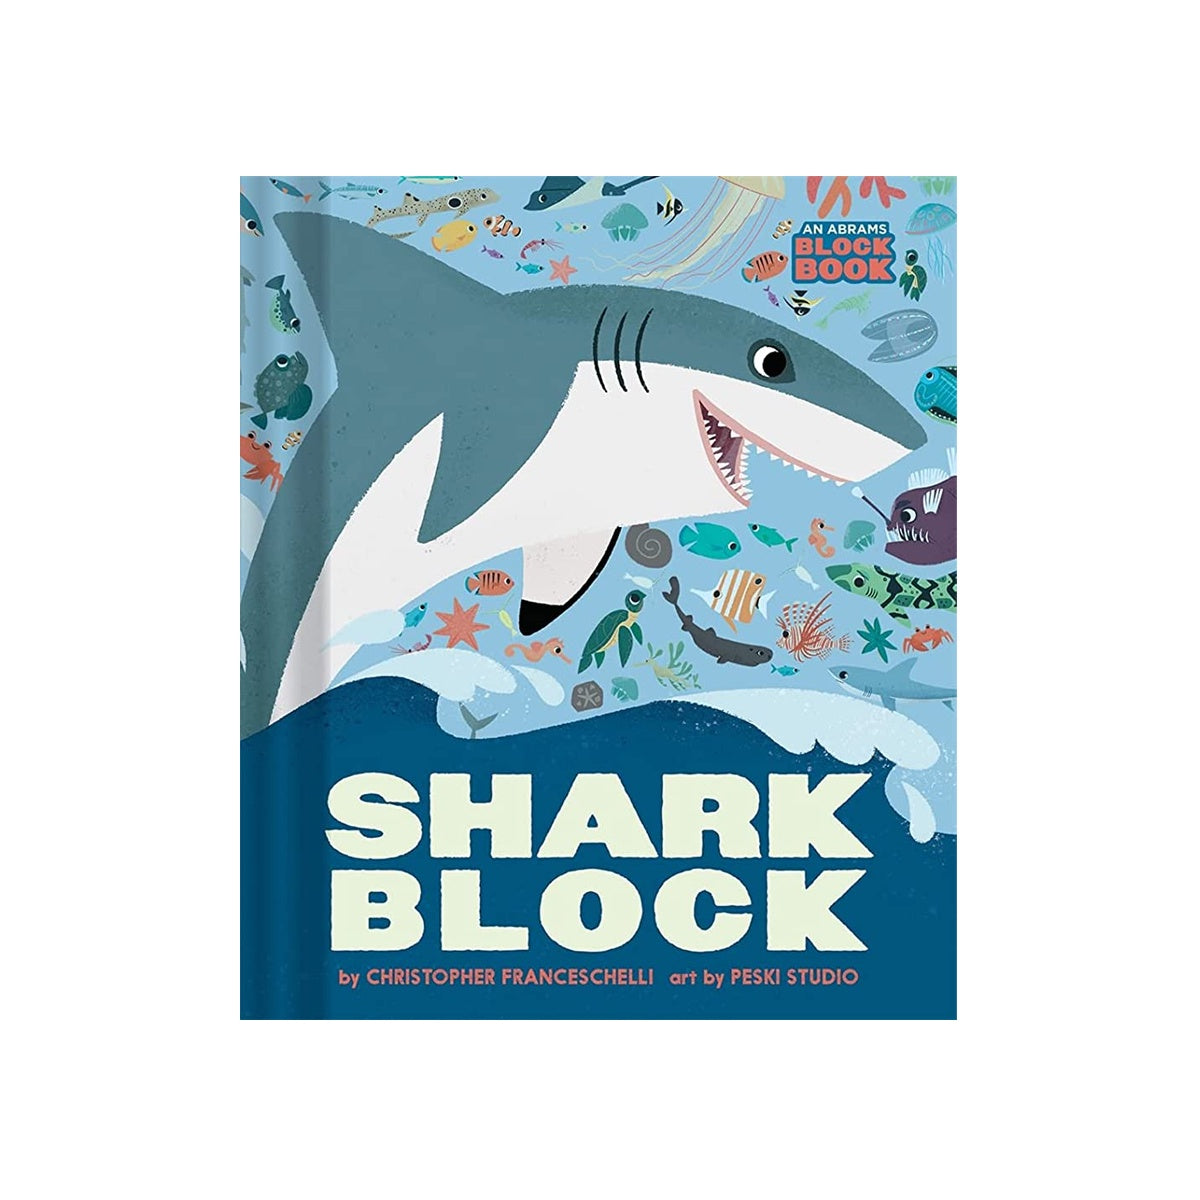 Sharkblock